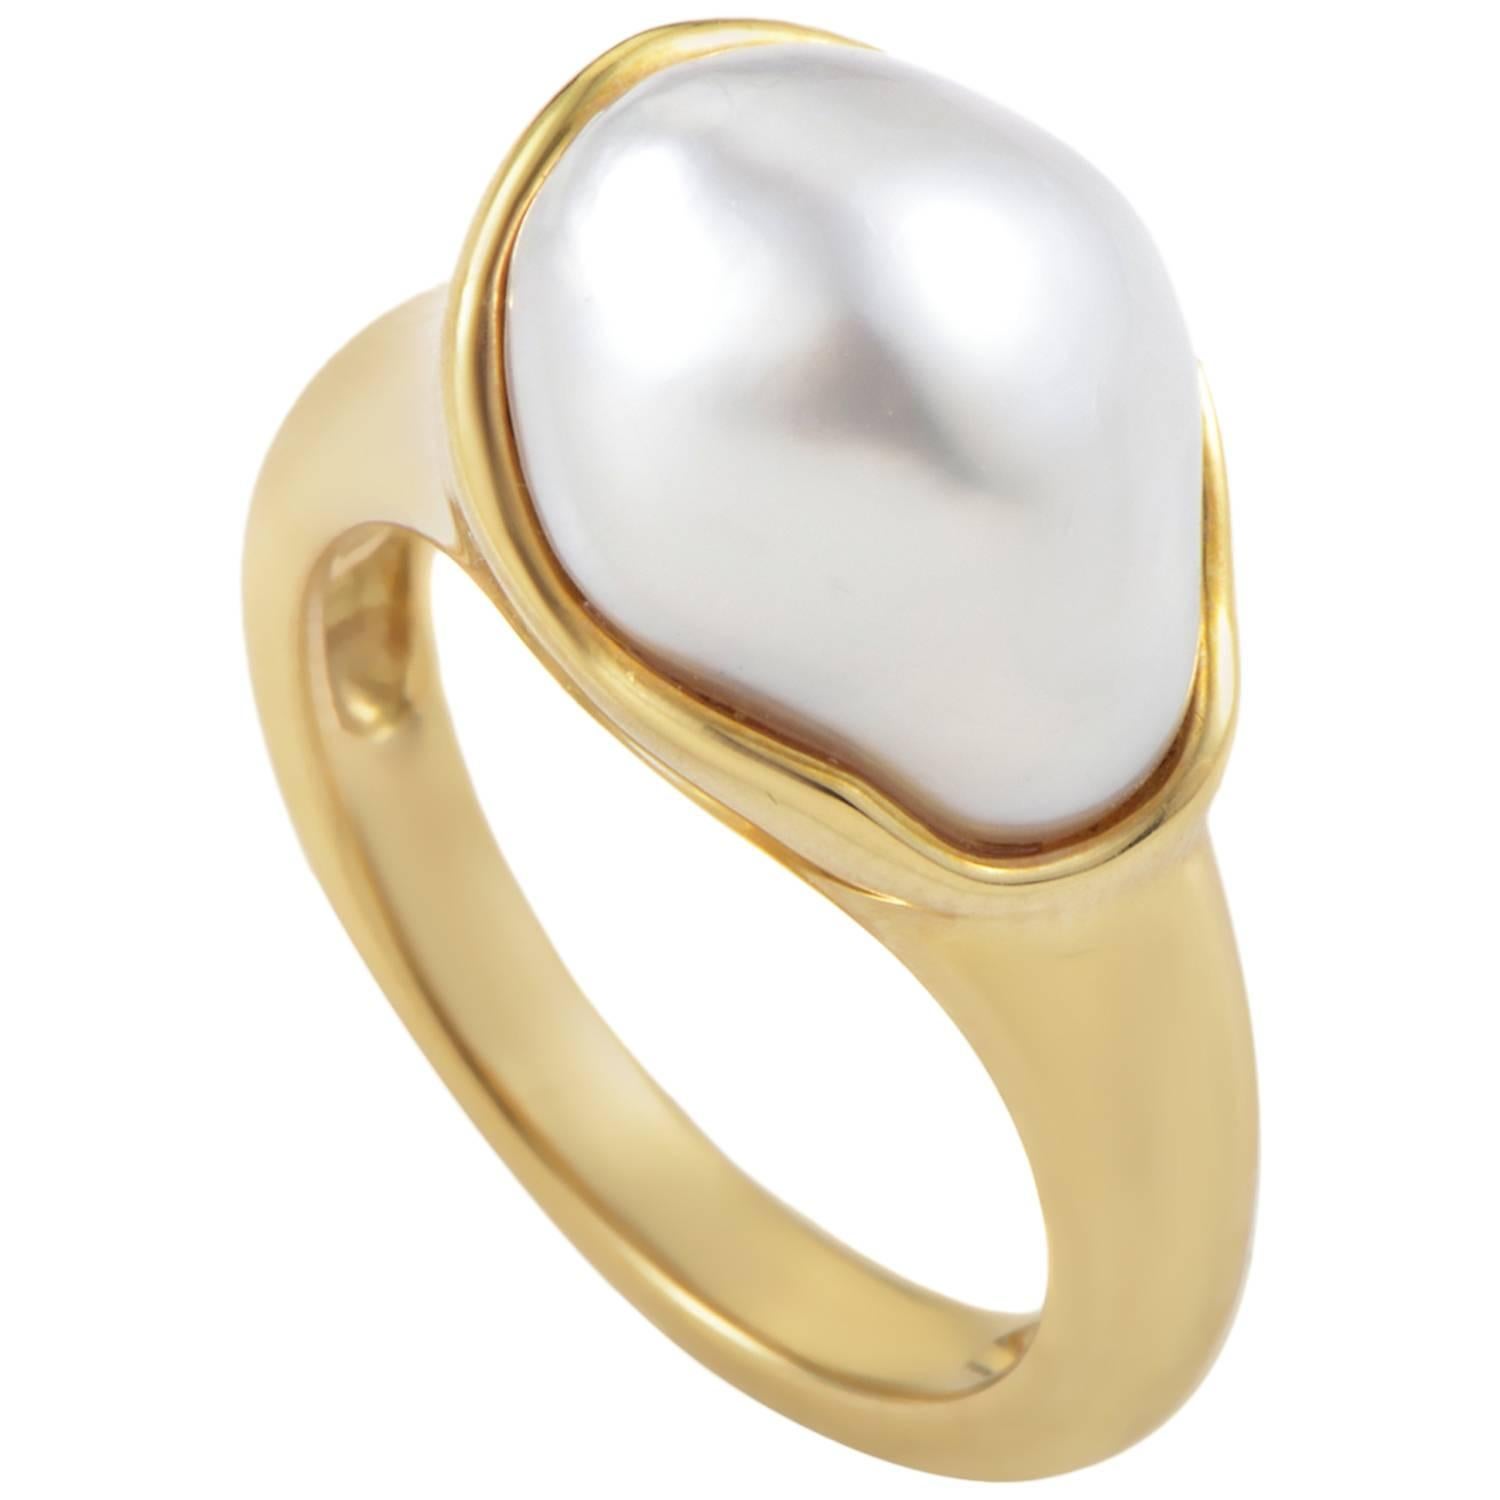 Tiffany & Co. Elsa Peretti Pearl Gold Ring